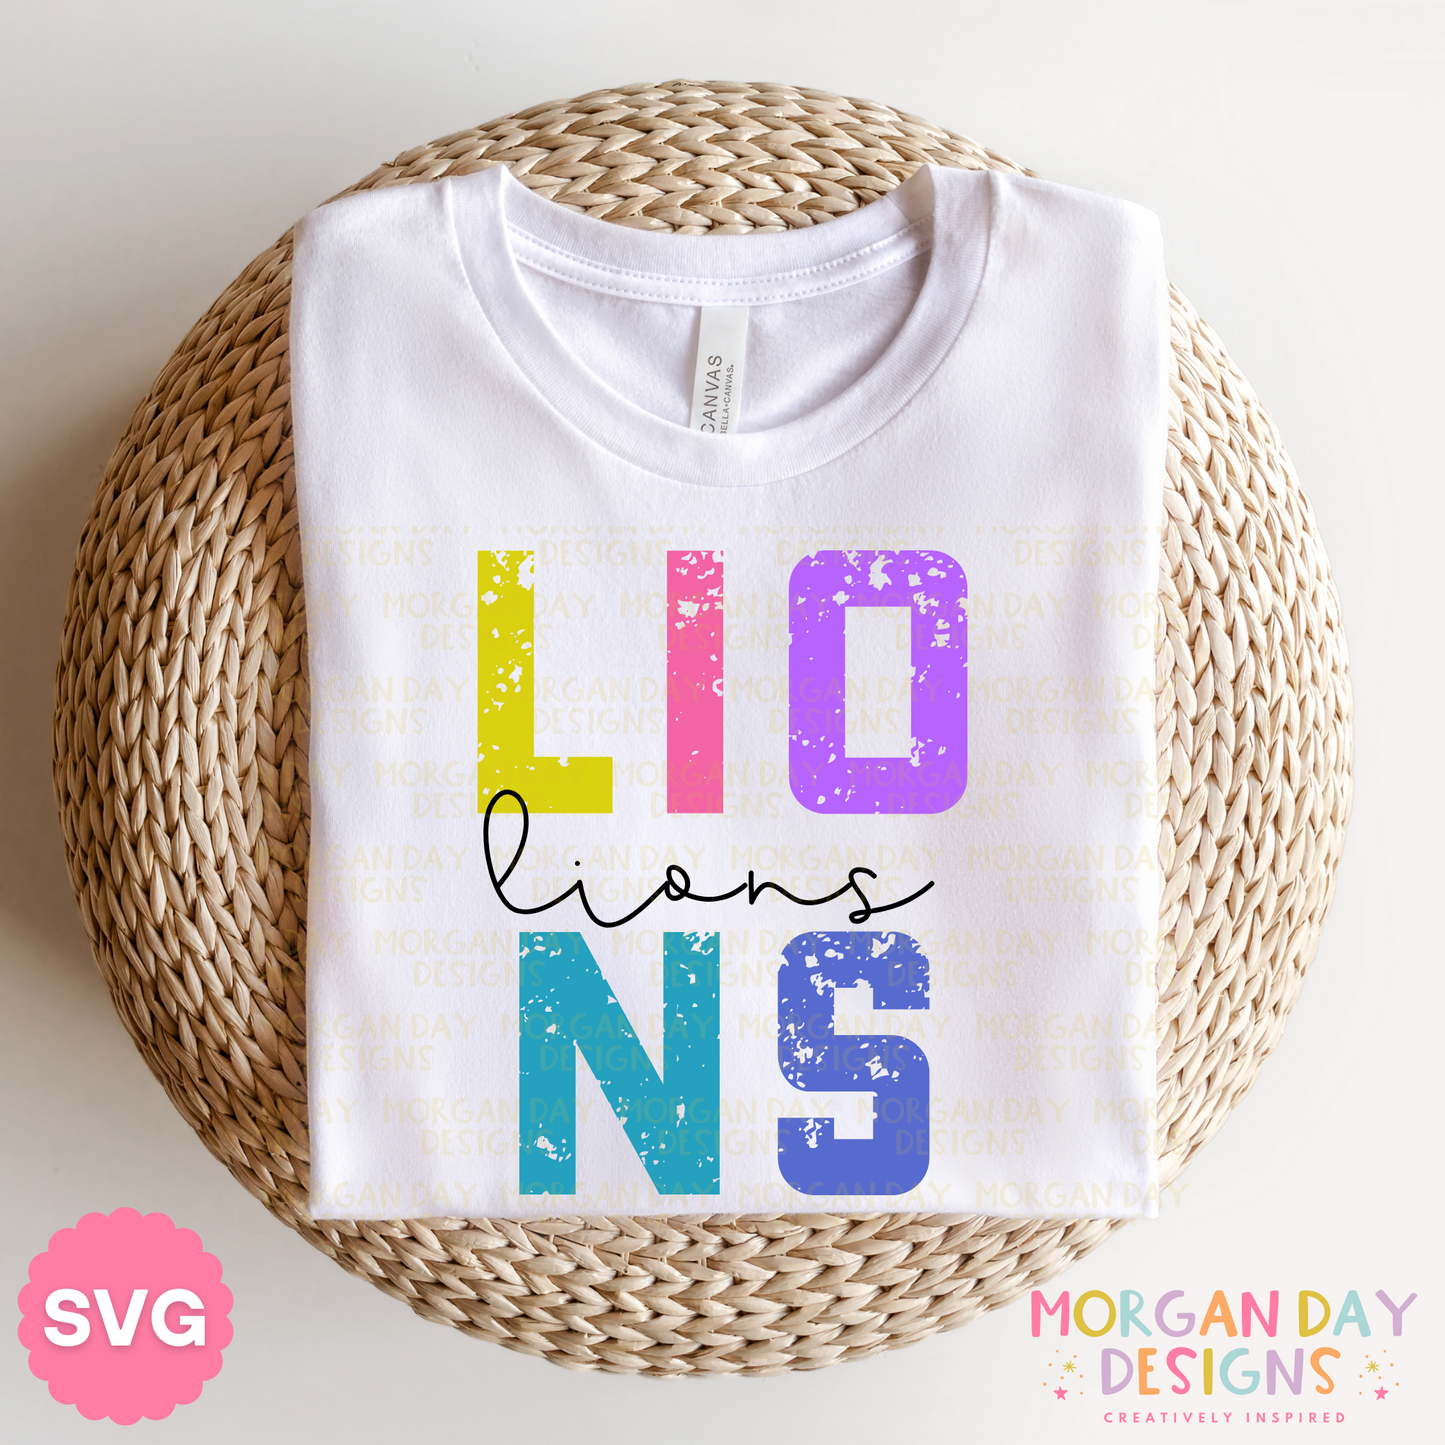 Lions Mascot Sublimation PNG + SVG